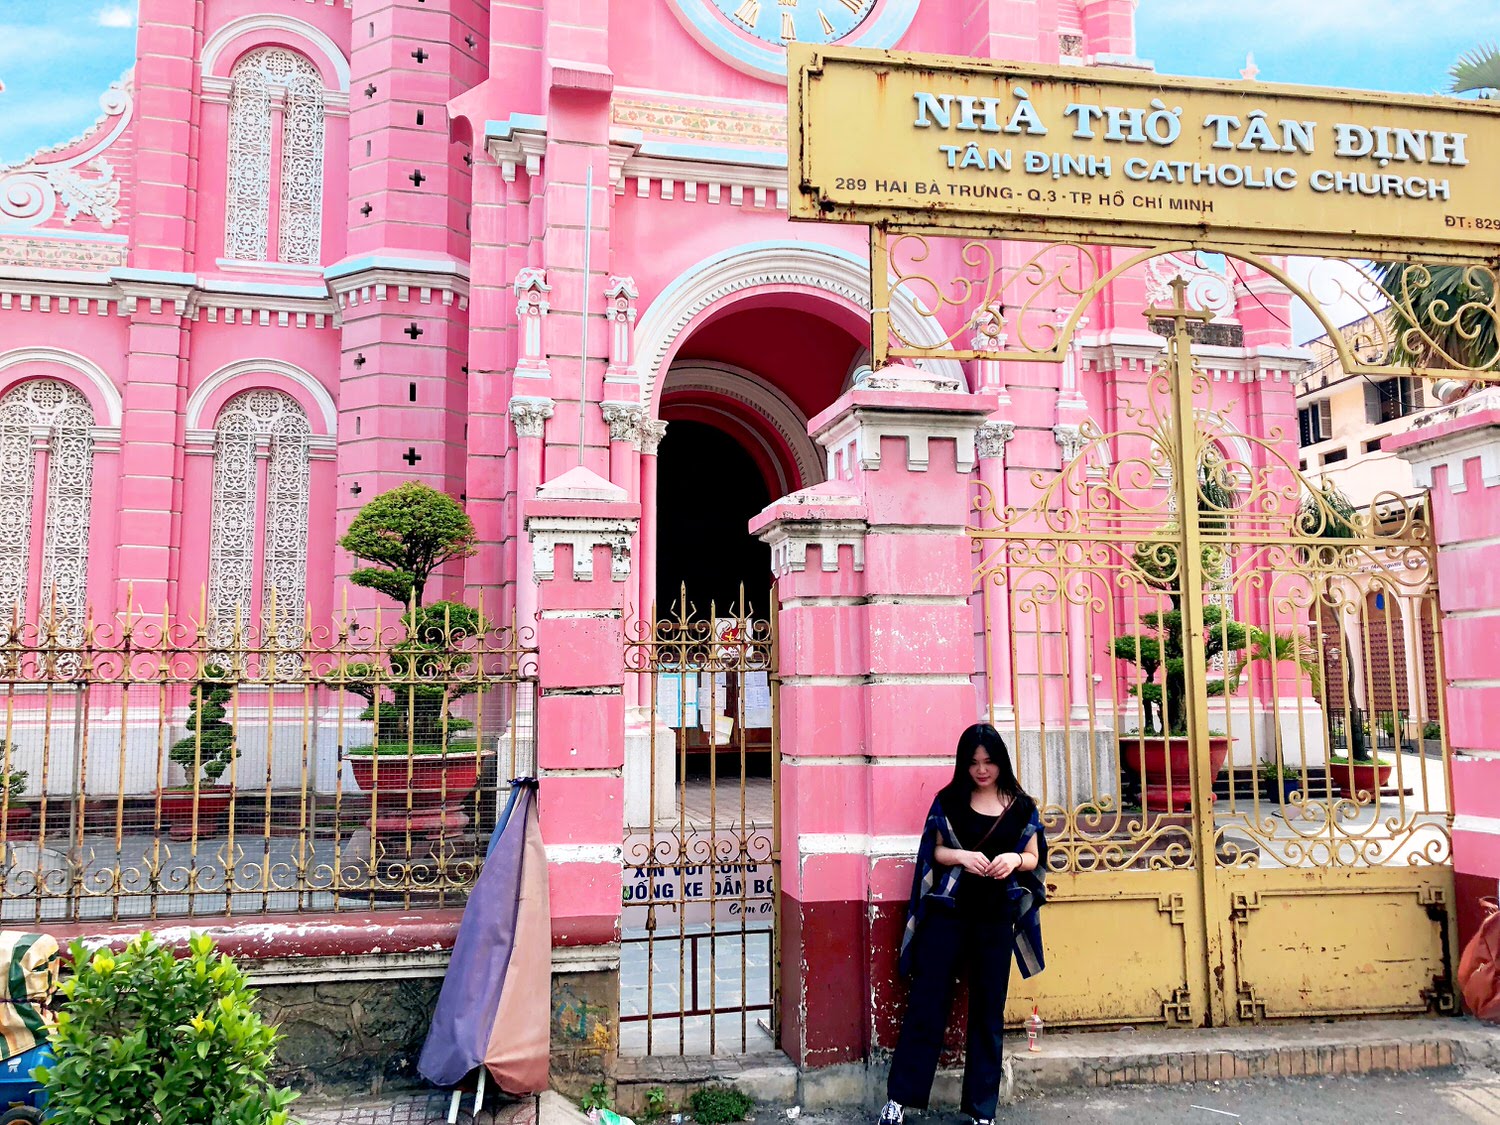 Vietnam 胡志明市自由行 
Nhà thờ Tân Định 耶穌聖心堂/粉紅教堂